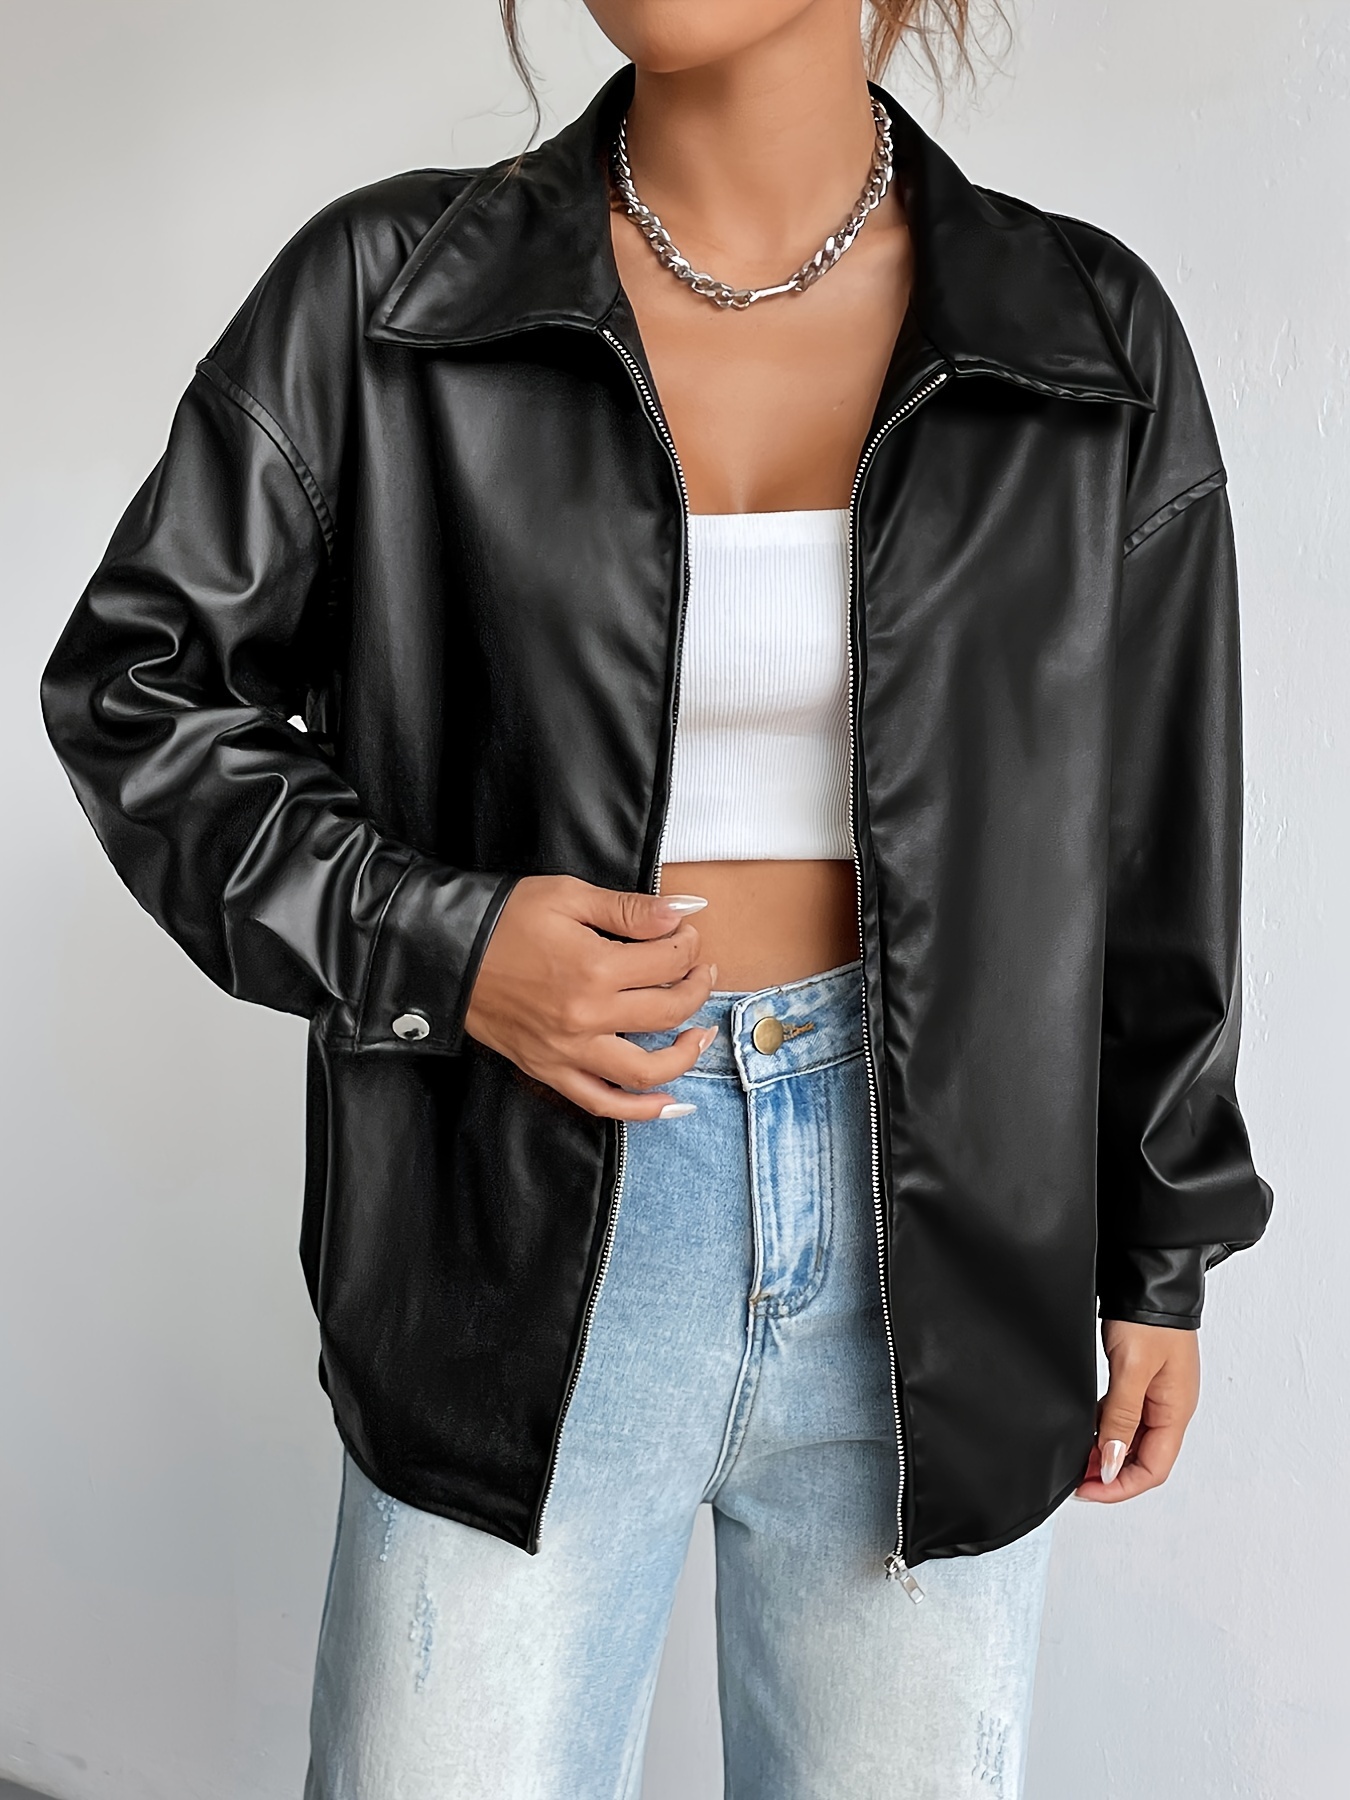 Women Pu Leather Jacket Zipper Motorcycle Coat Short Faux Leather Biker  Jacket Soft Bomber Jacket Female